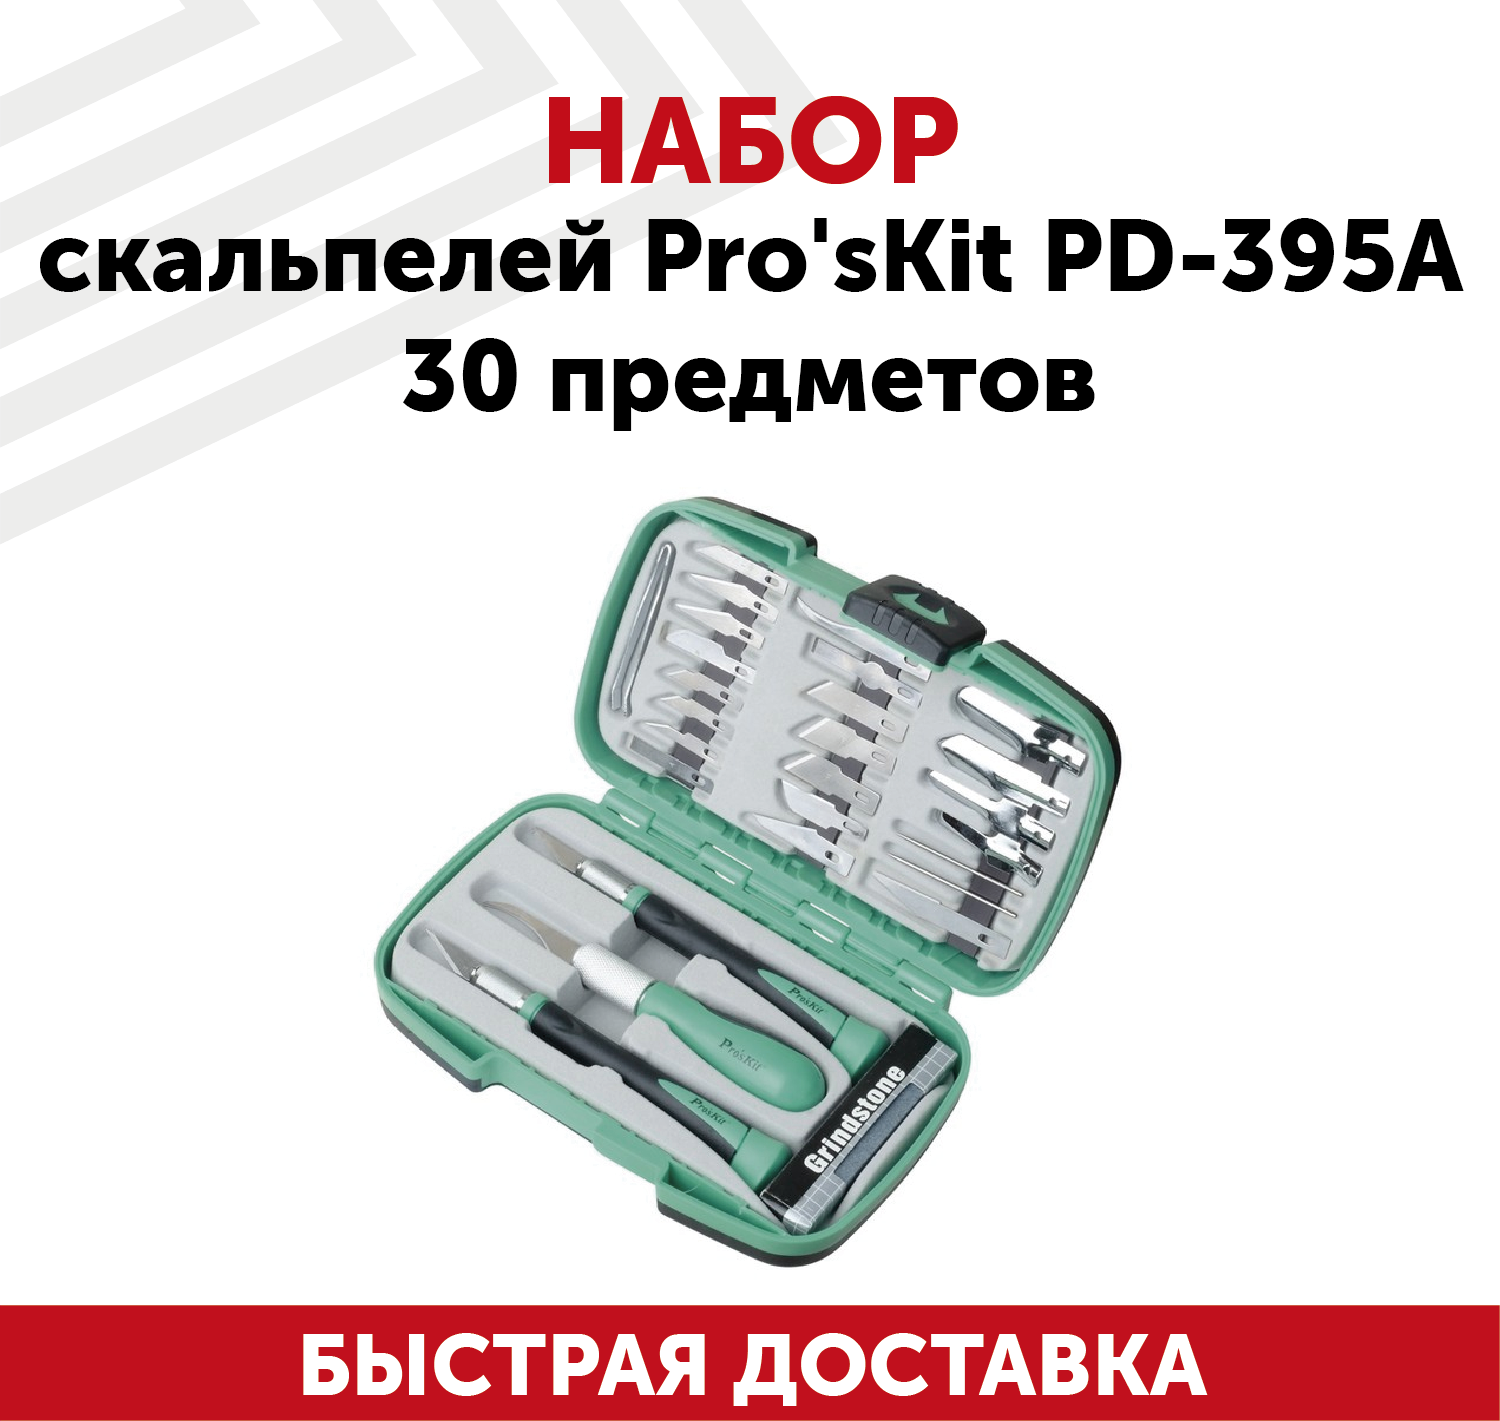 Набор радиомонтажных ножей Pro'skit PD-395A высокоуглеродистая сталь, 3 ножа + лезвия, 30 предметов